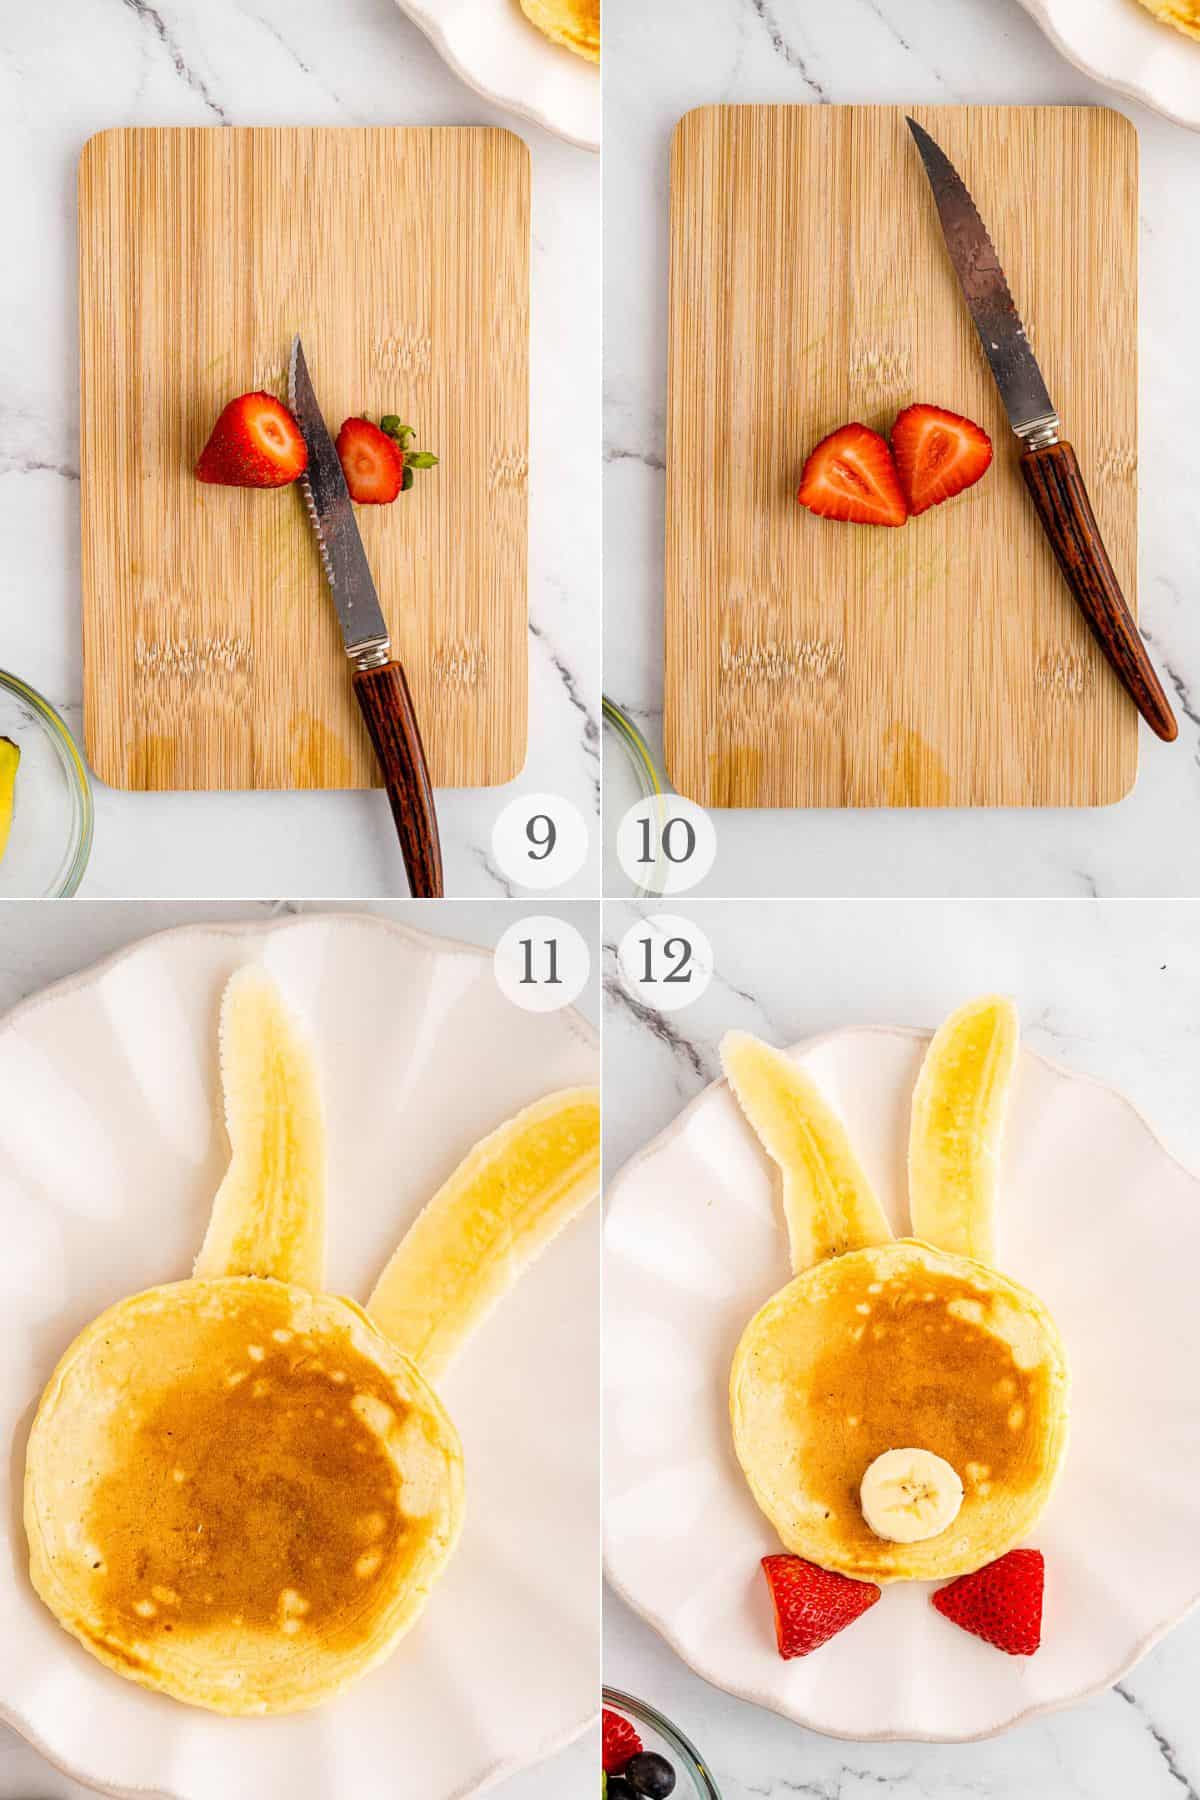 bunny pancakes recipe steps 9-12.